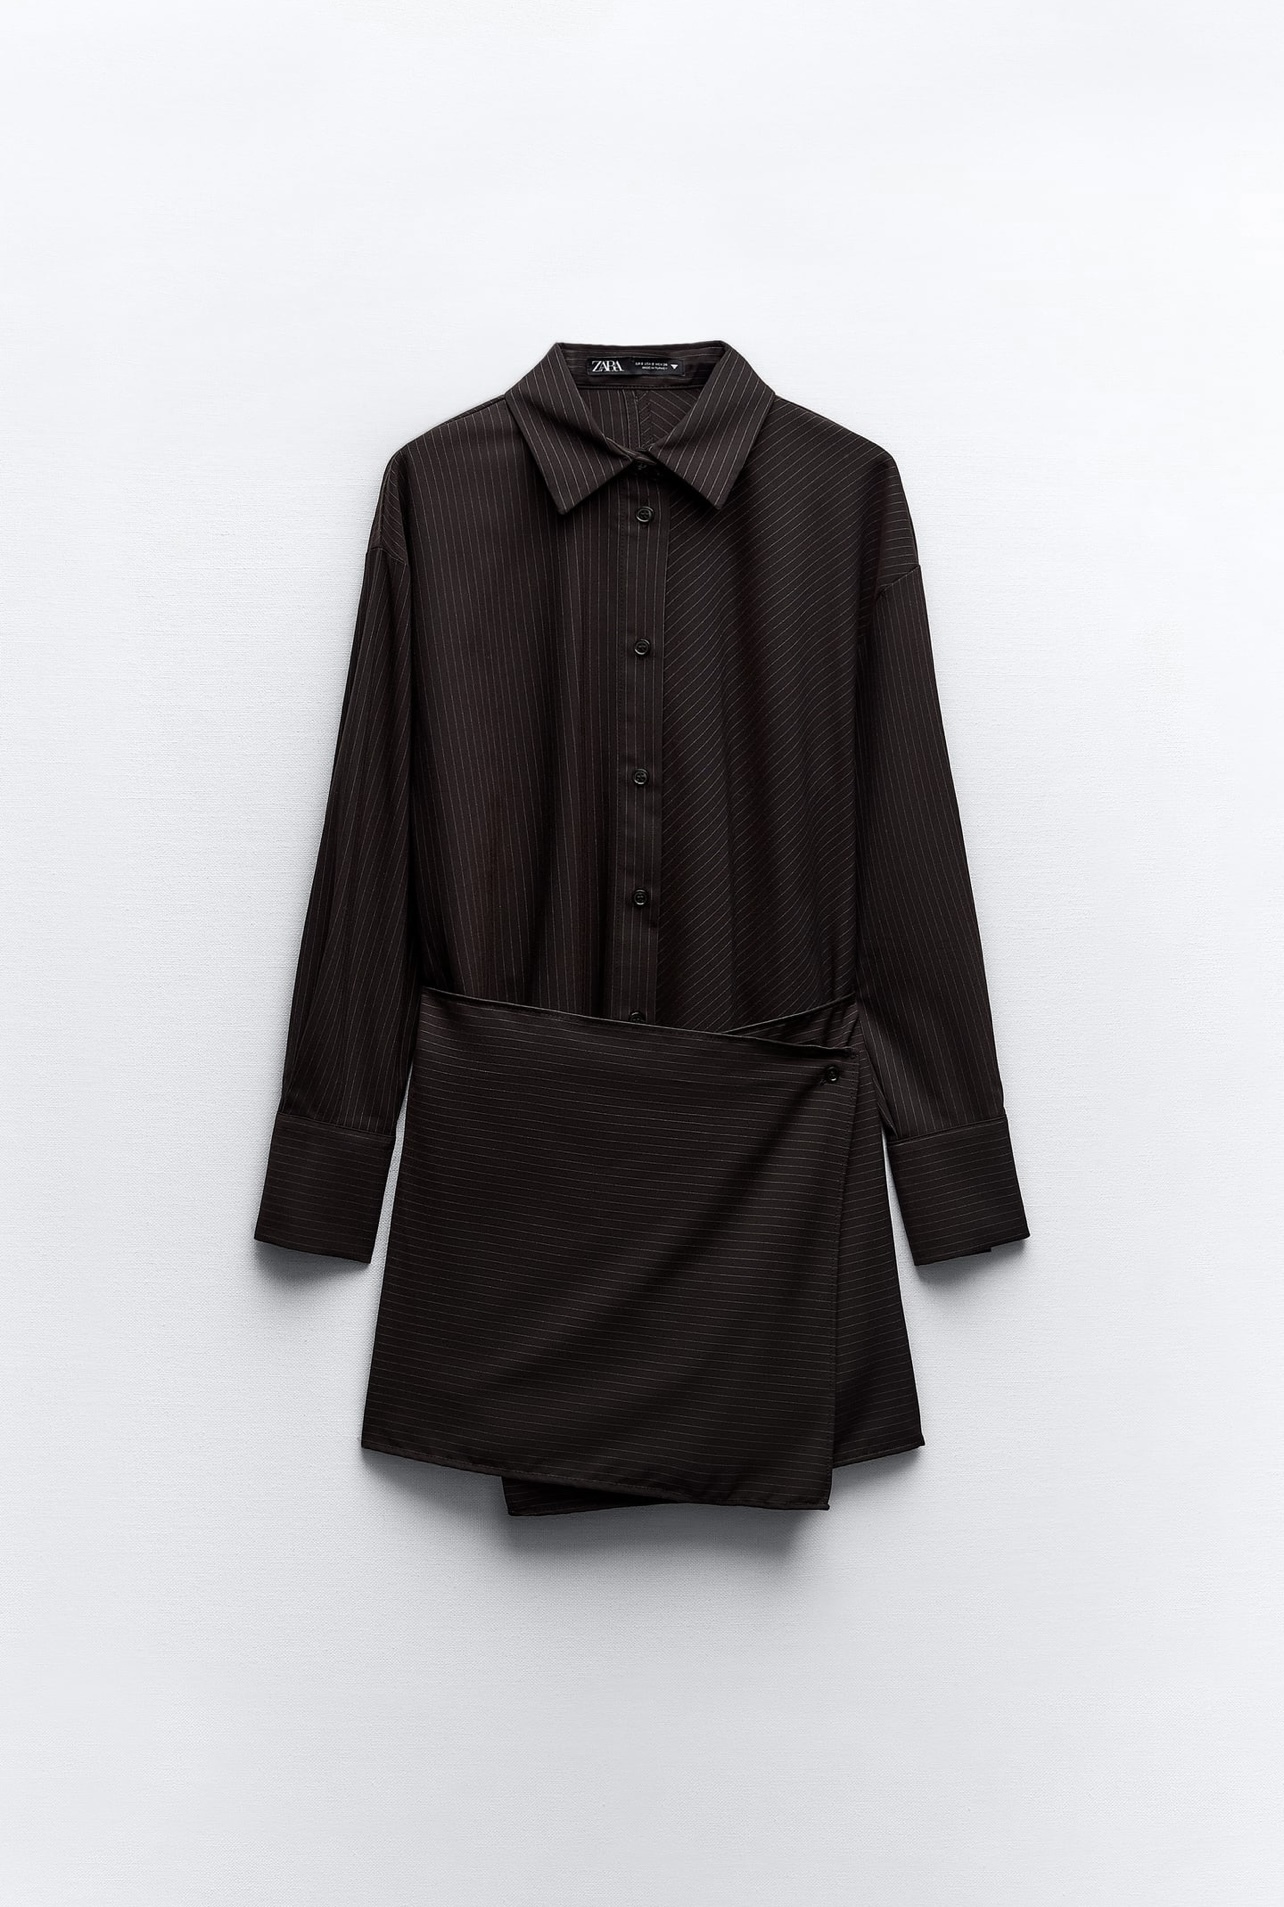 Vestido camisero raya diplomática de Zara (35,95 euros)